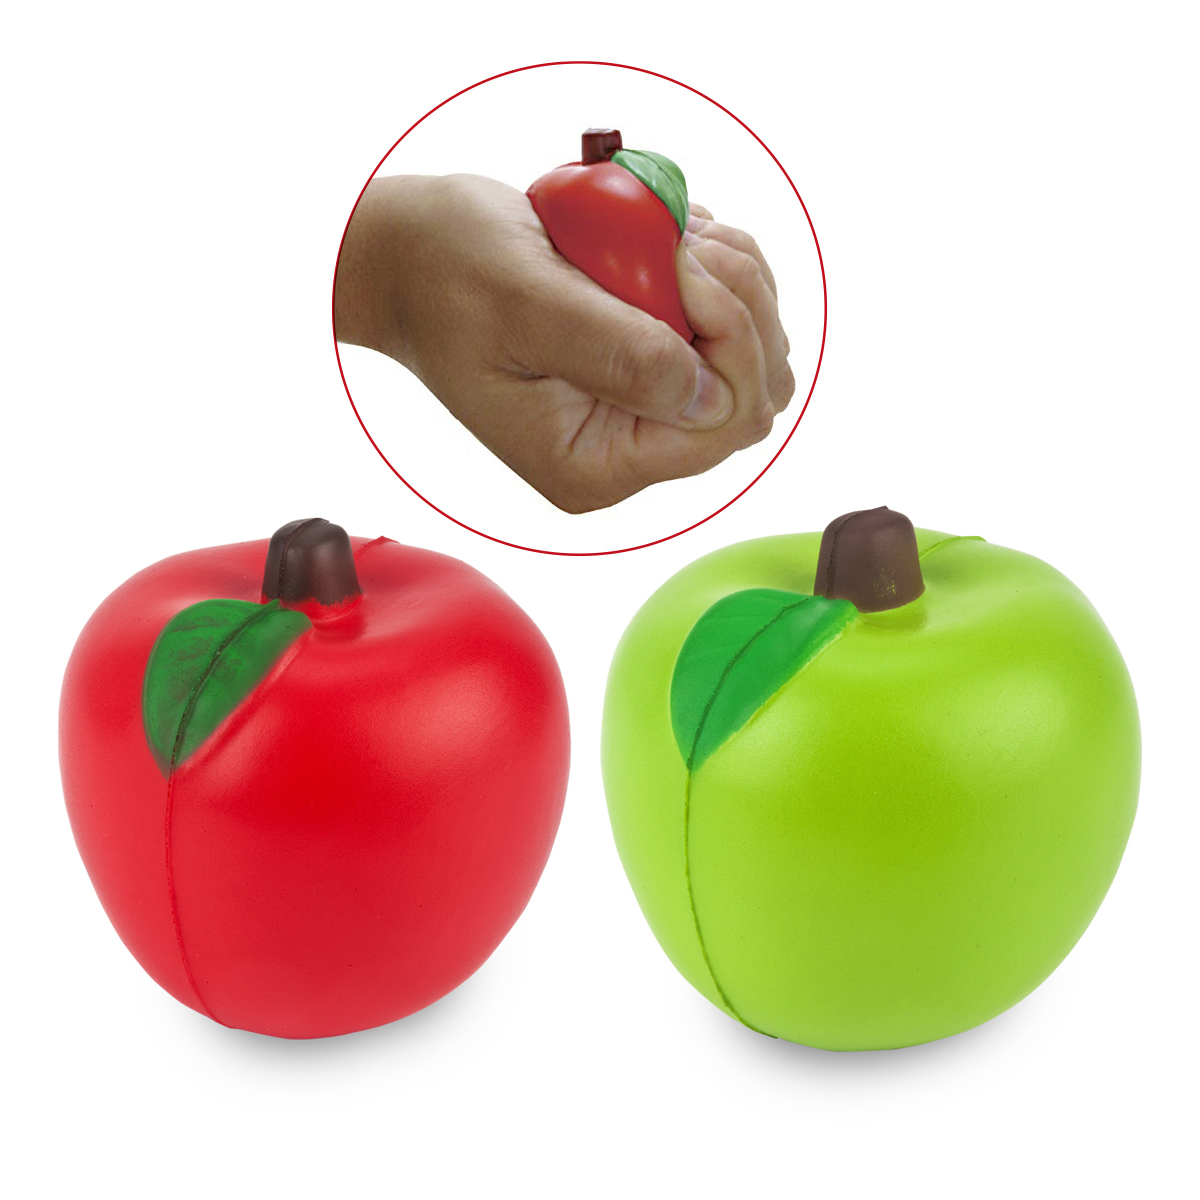 גרנד - תפוח עץ למשחק והפגת לחצים, עשוי PU גמיש. קוטר 0.7 ס"מ. 